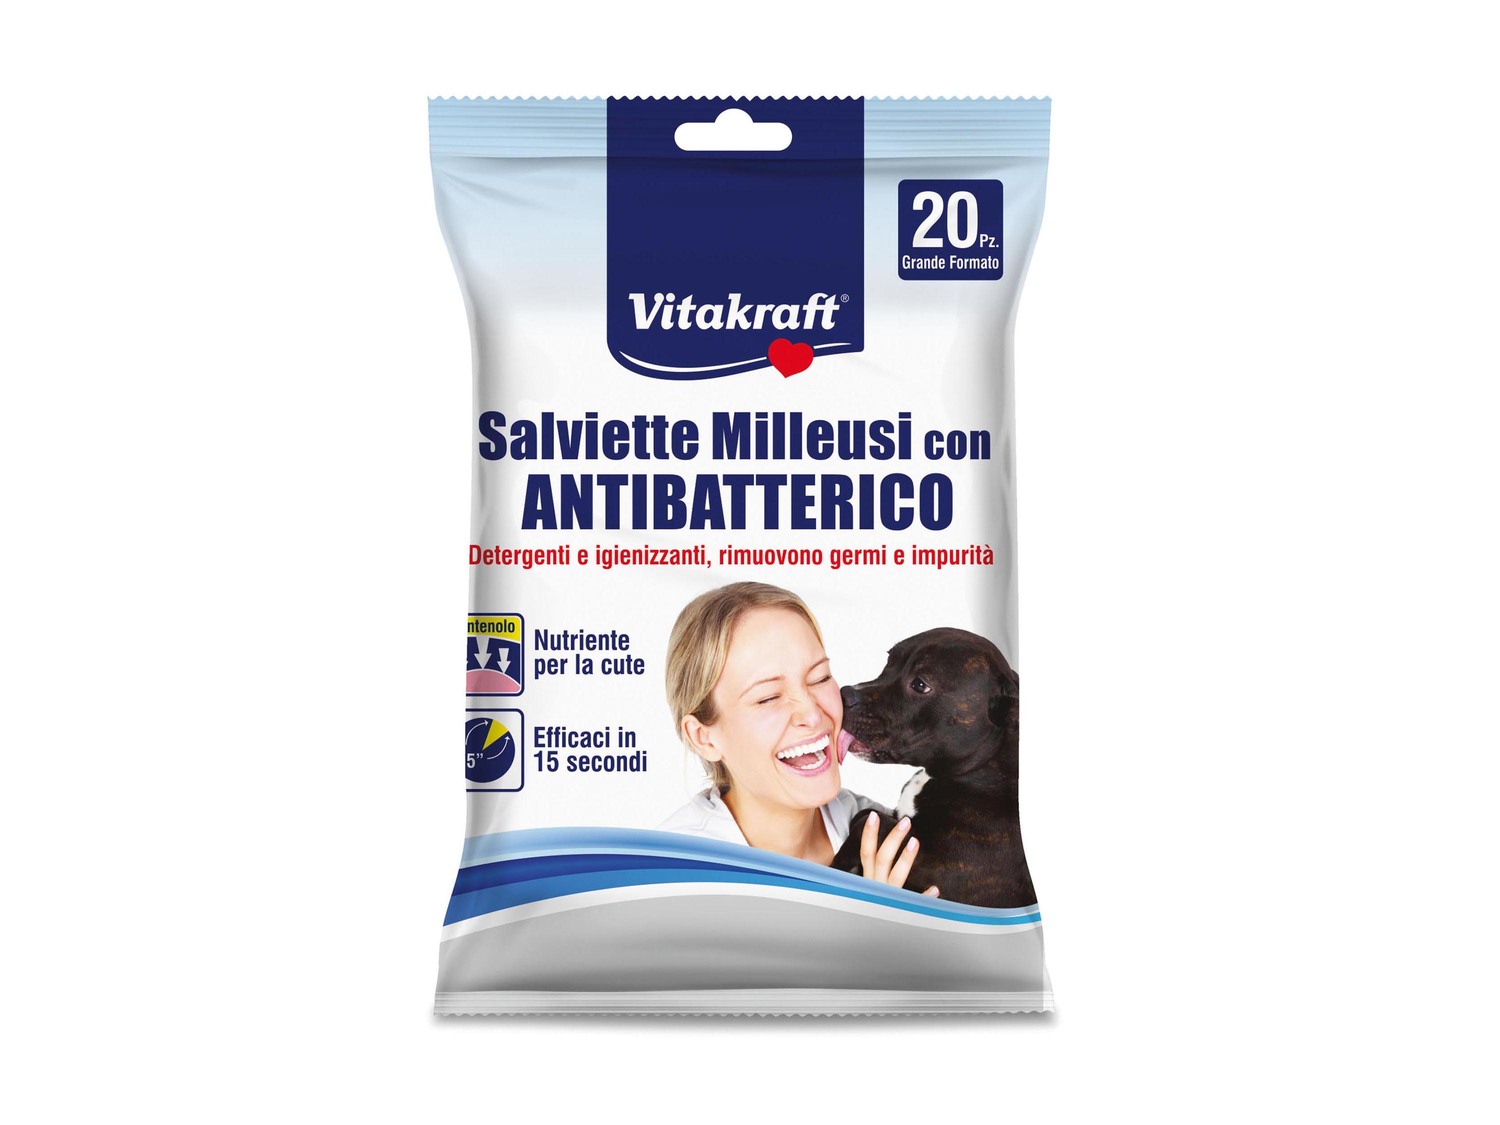 Shampoo per cani neutro o salviette milleusi con antibatterico Vitakraft, prezzo ...